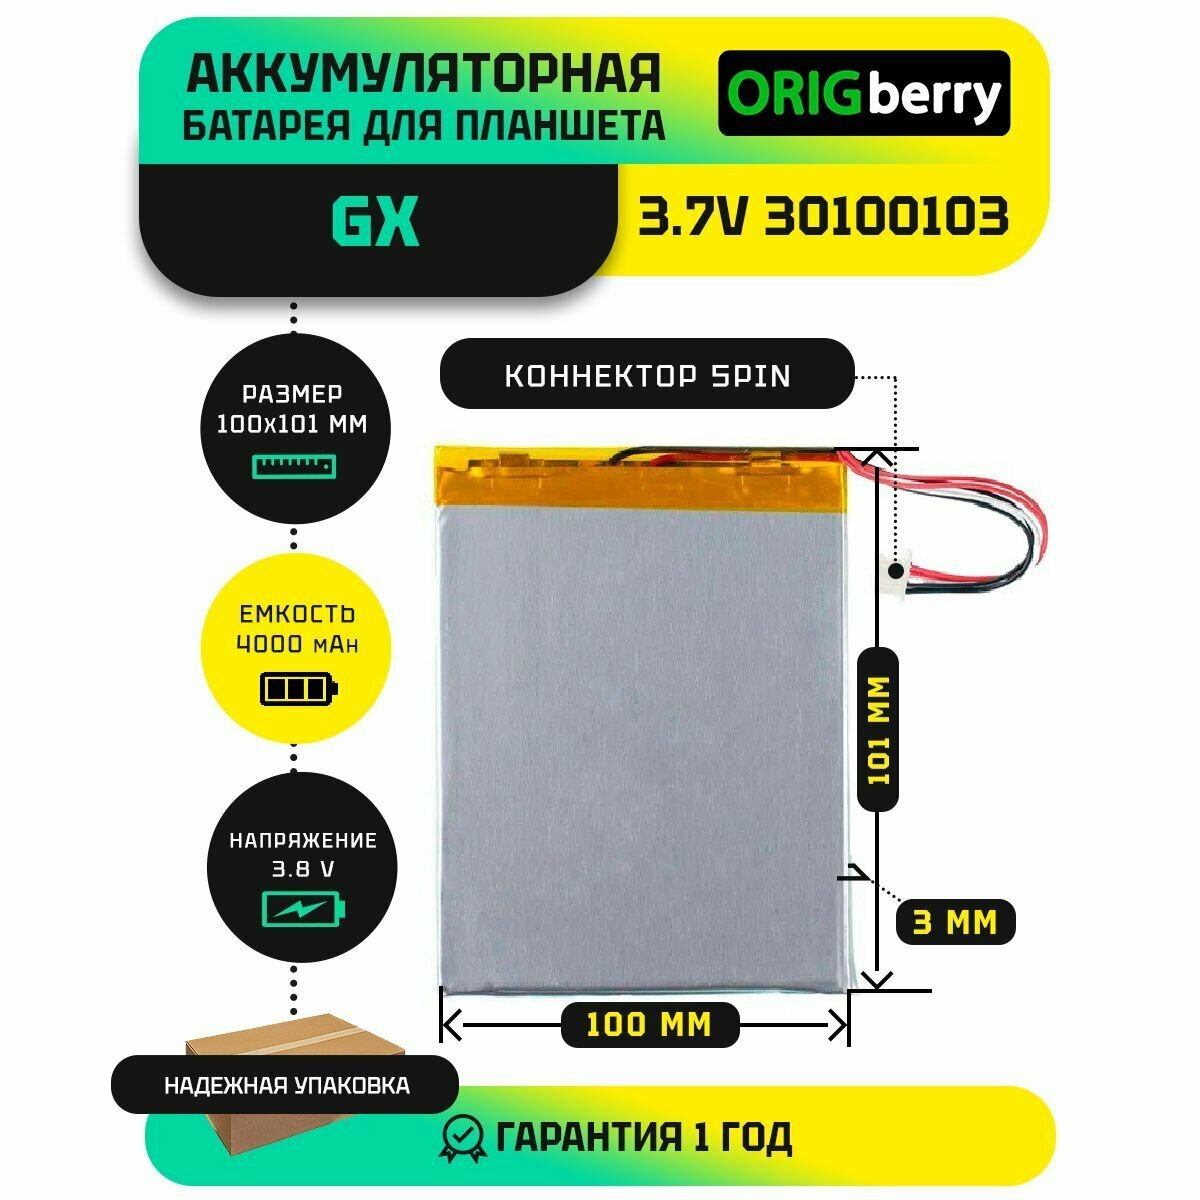 Аккумулятор для планшета GX 3.7V 30100103 3,8 V / 4000 mAh / 101мм x 100мм / коннектор 5 PIN